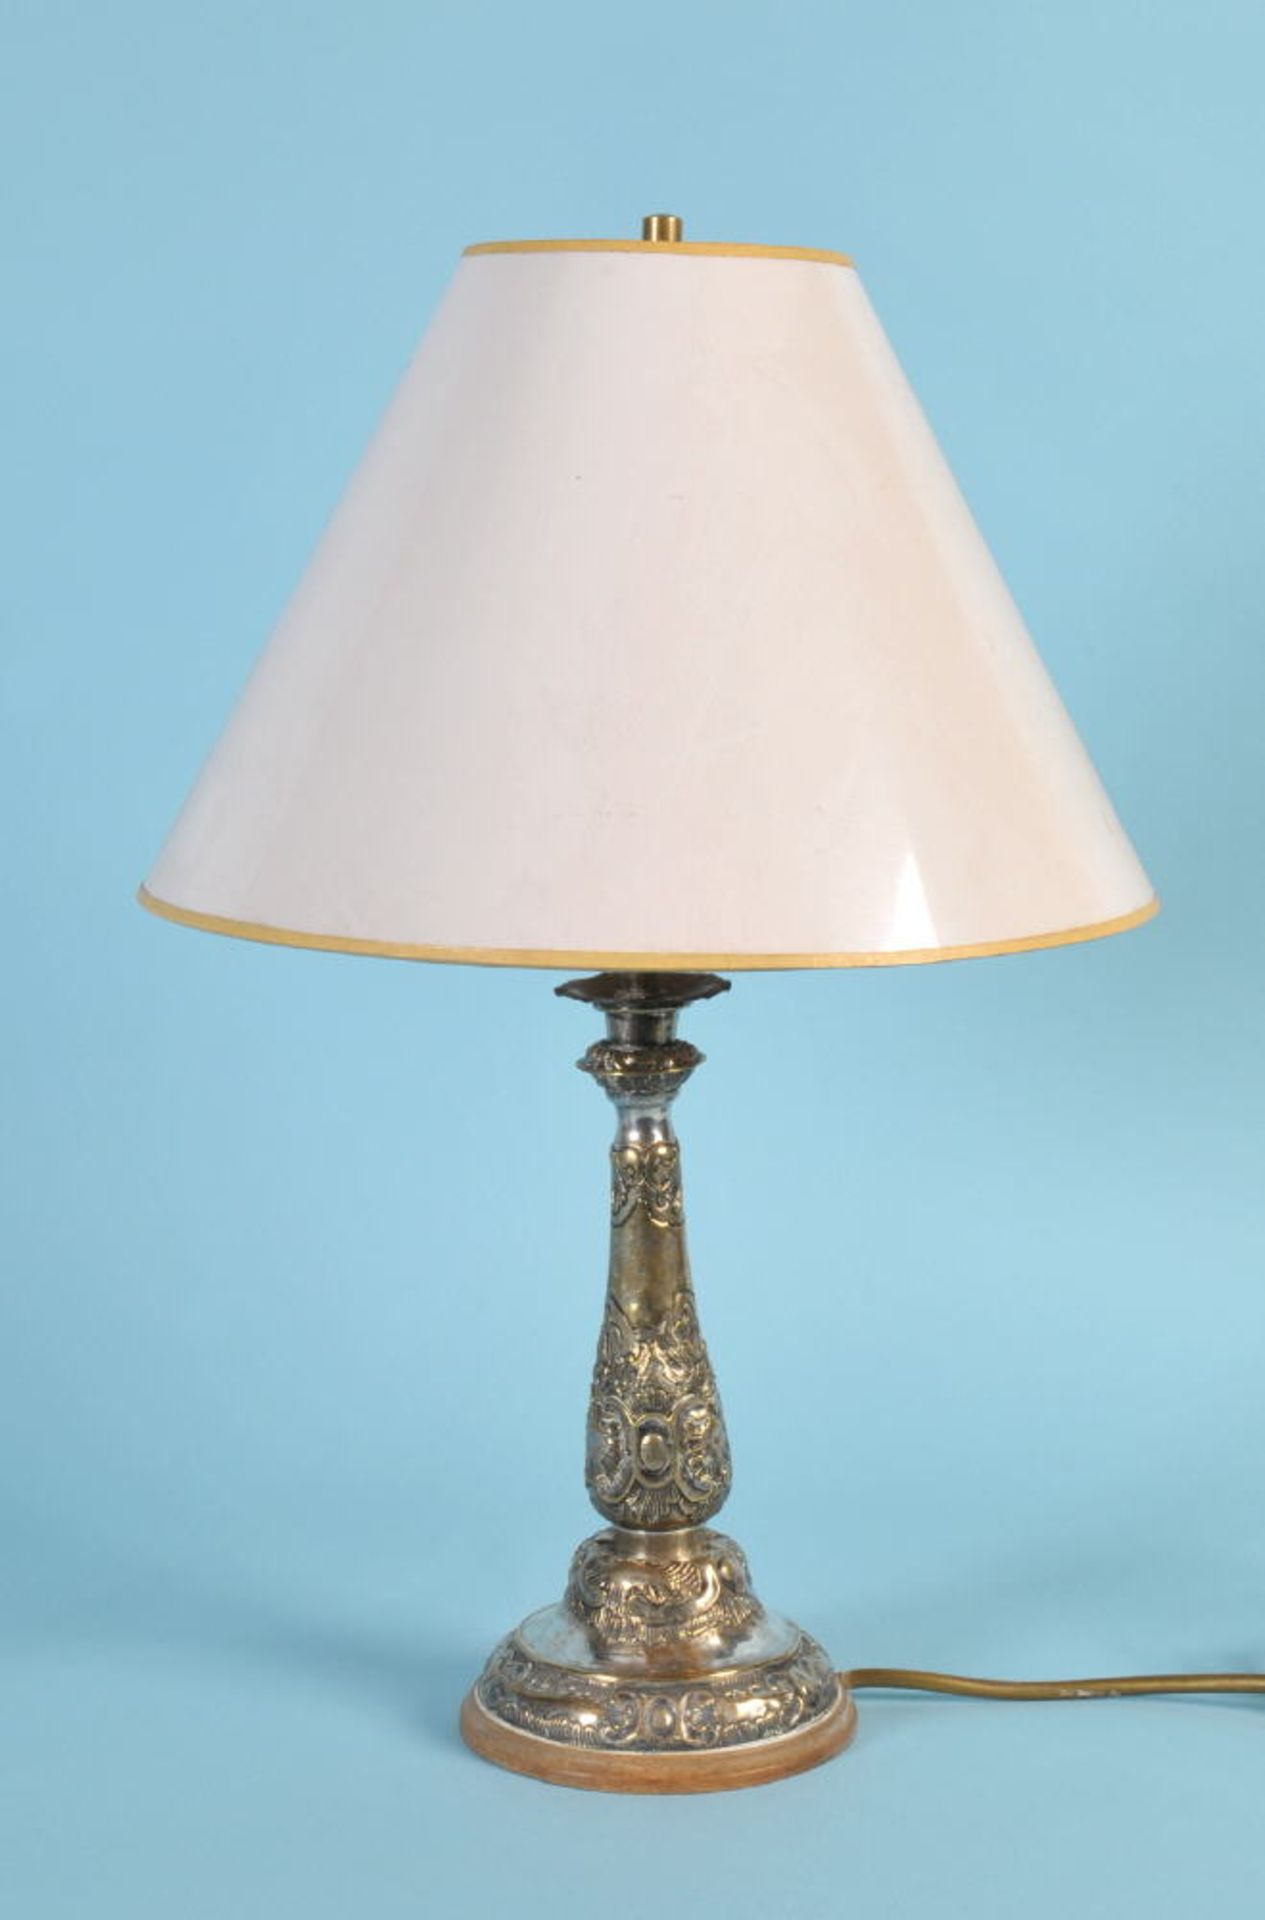 TischlampeMetall versilbert, reich strukturiertes Ornamentdekor im Rokoko-Stil, Rundfuß,